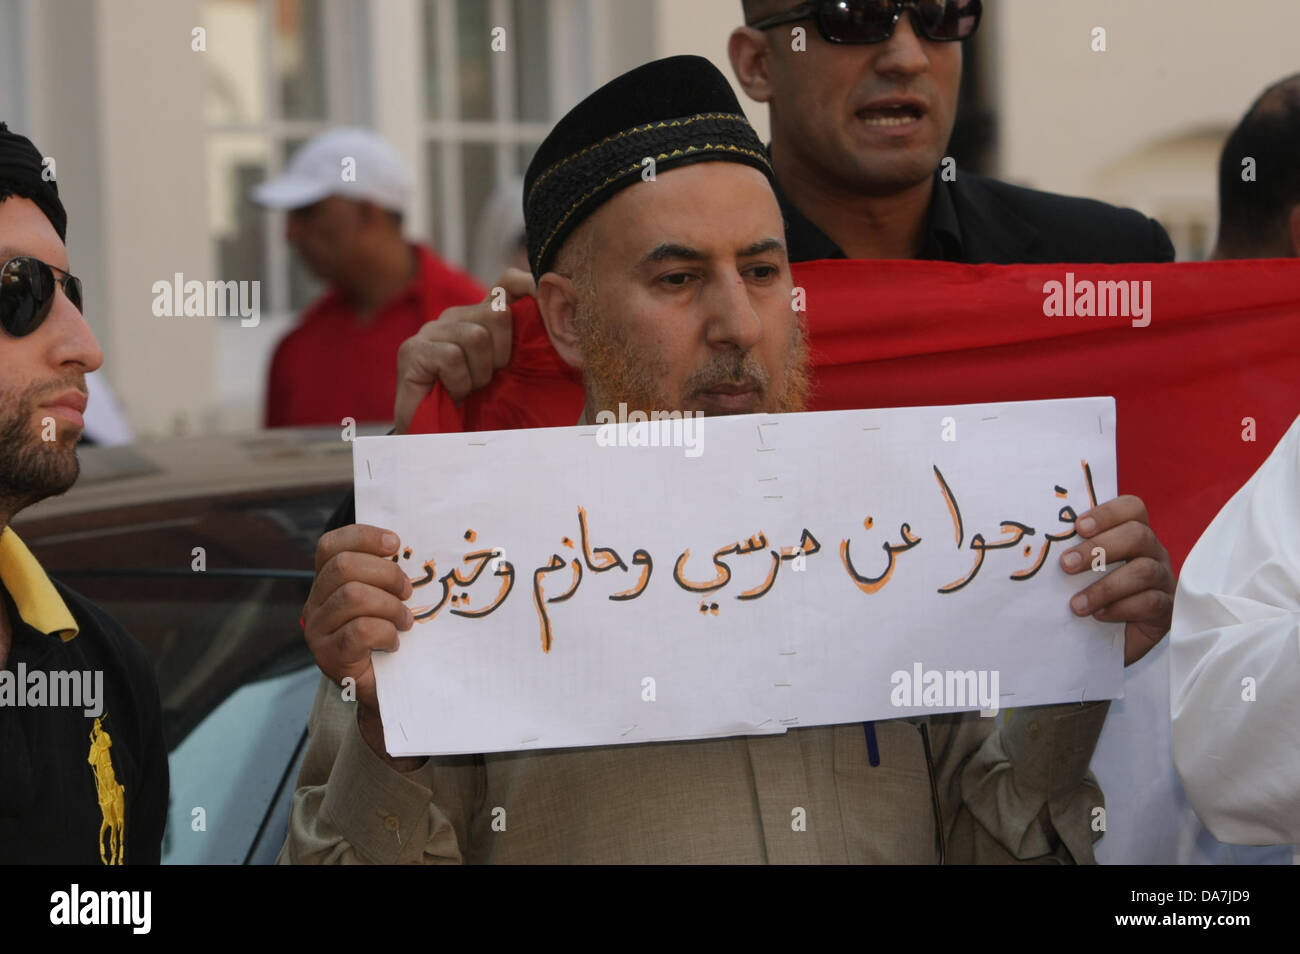 London, UK. 6. Juli 2013. Protest von Anjem Choudary fordern Scharia für Ägypten vor der ägyptischen Botschaft in London organisiert. Bildnachweis: Martyn Wheatley/Alamy Live News Stockfoto